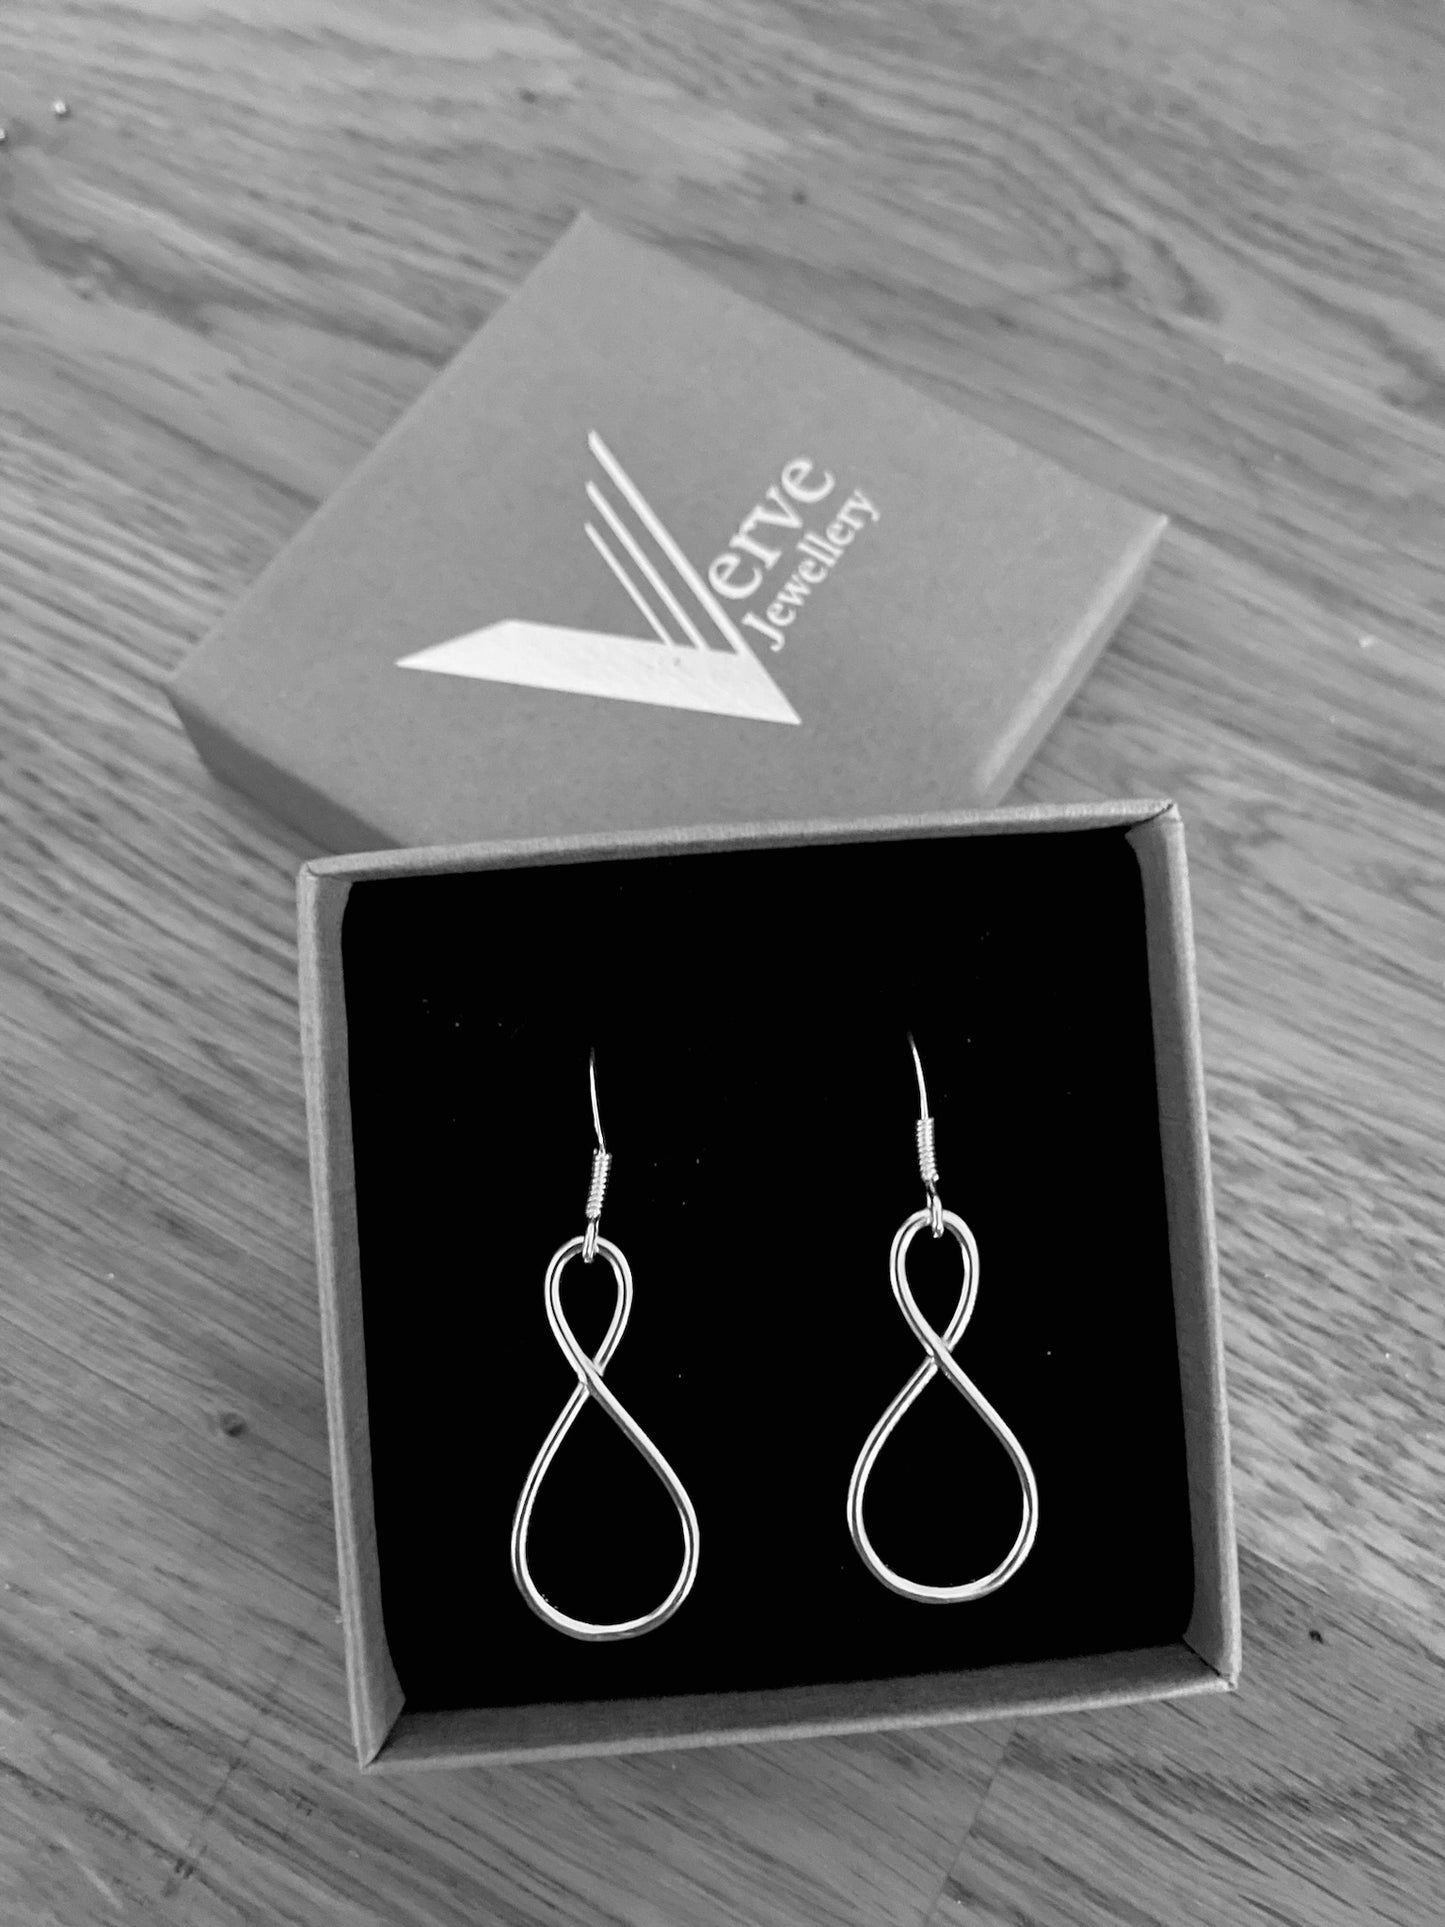 Sterling silver infinity earrings